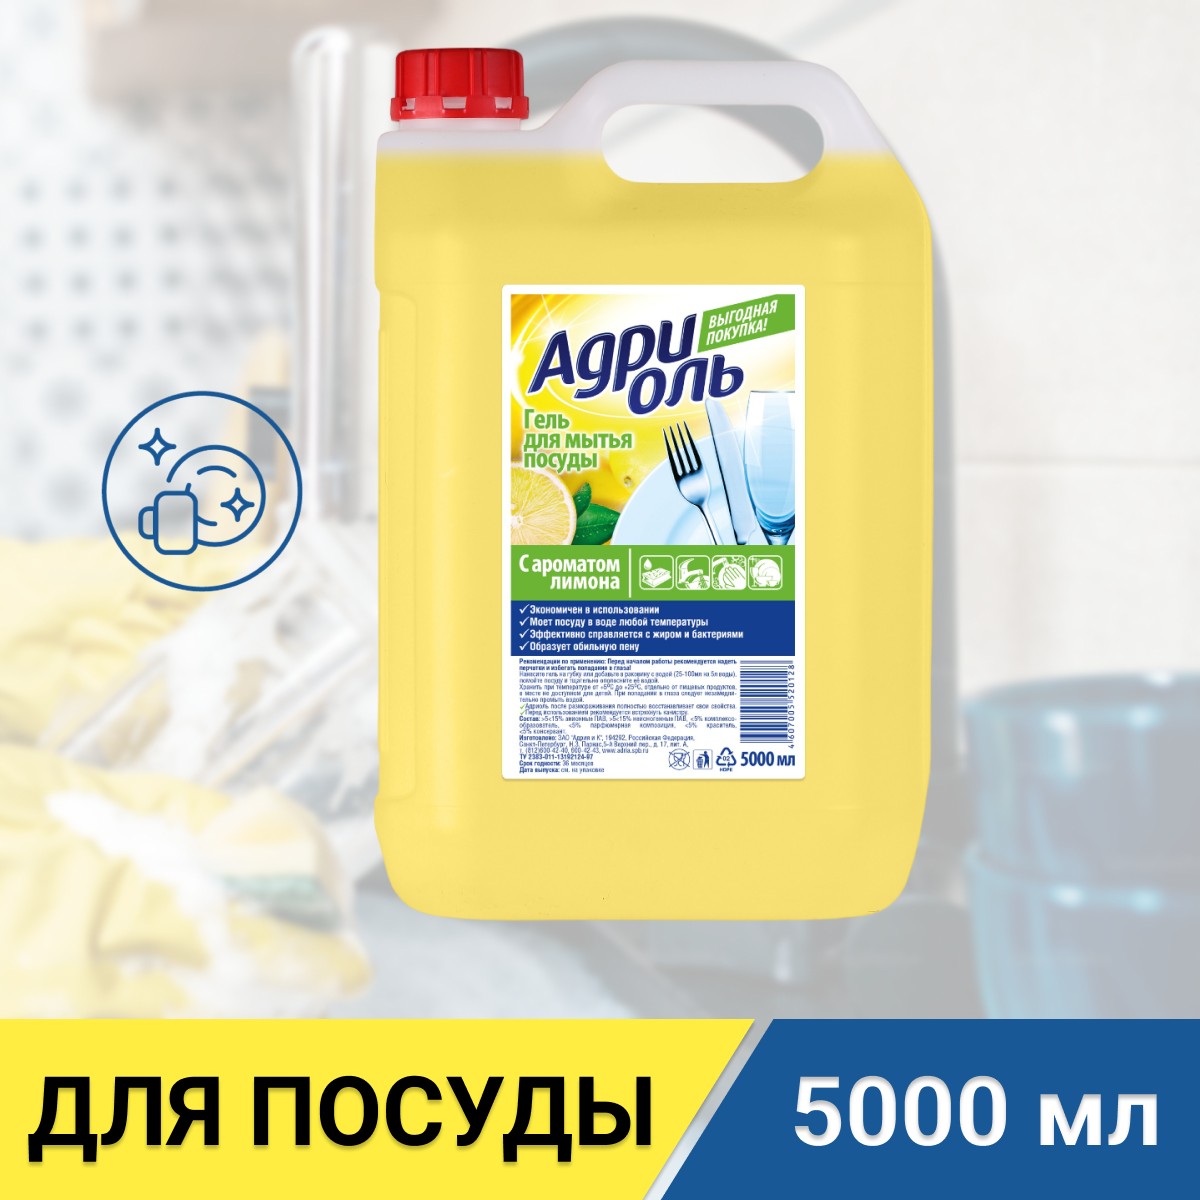 Адриоль для мытья посуды, лимон, 5л